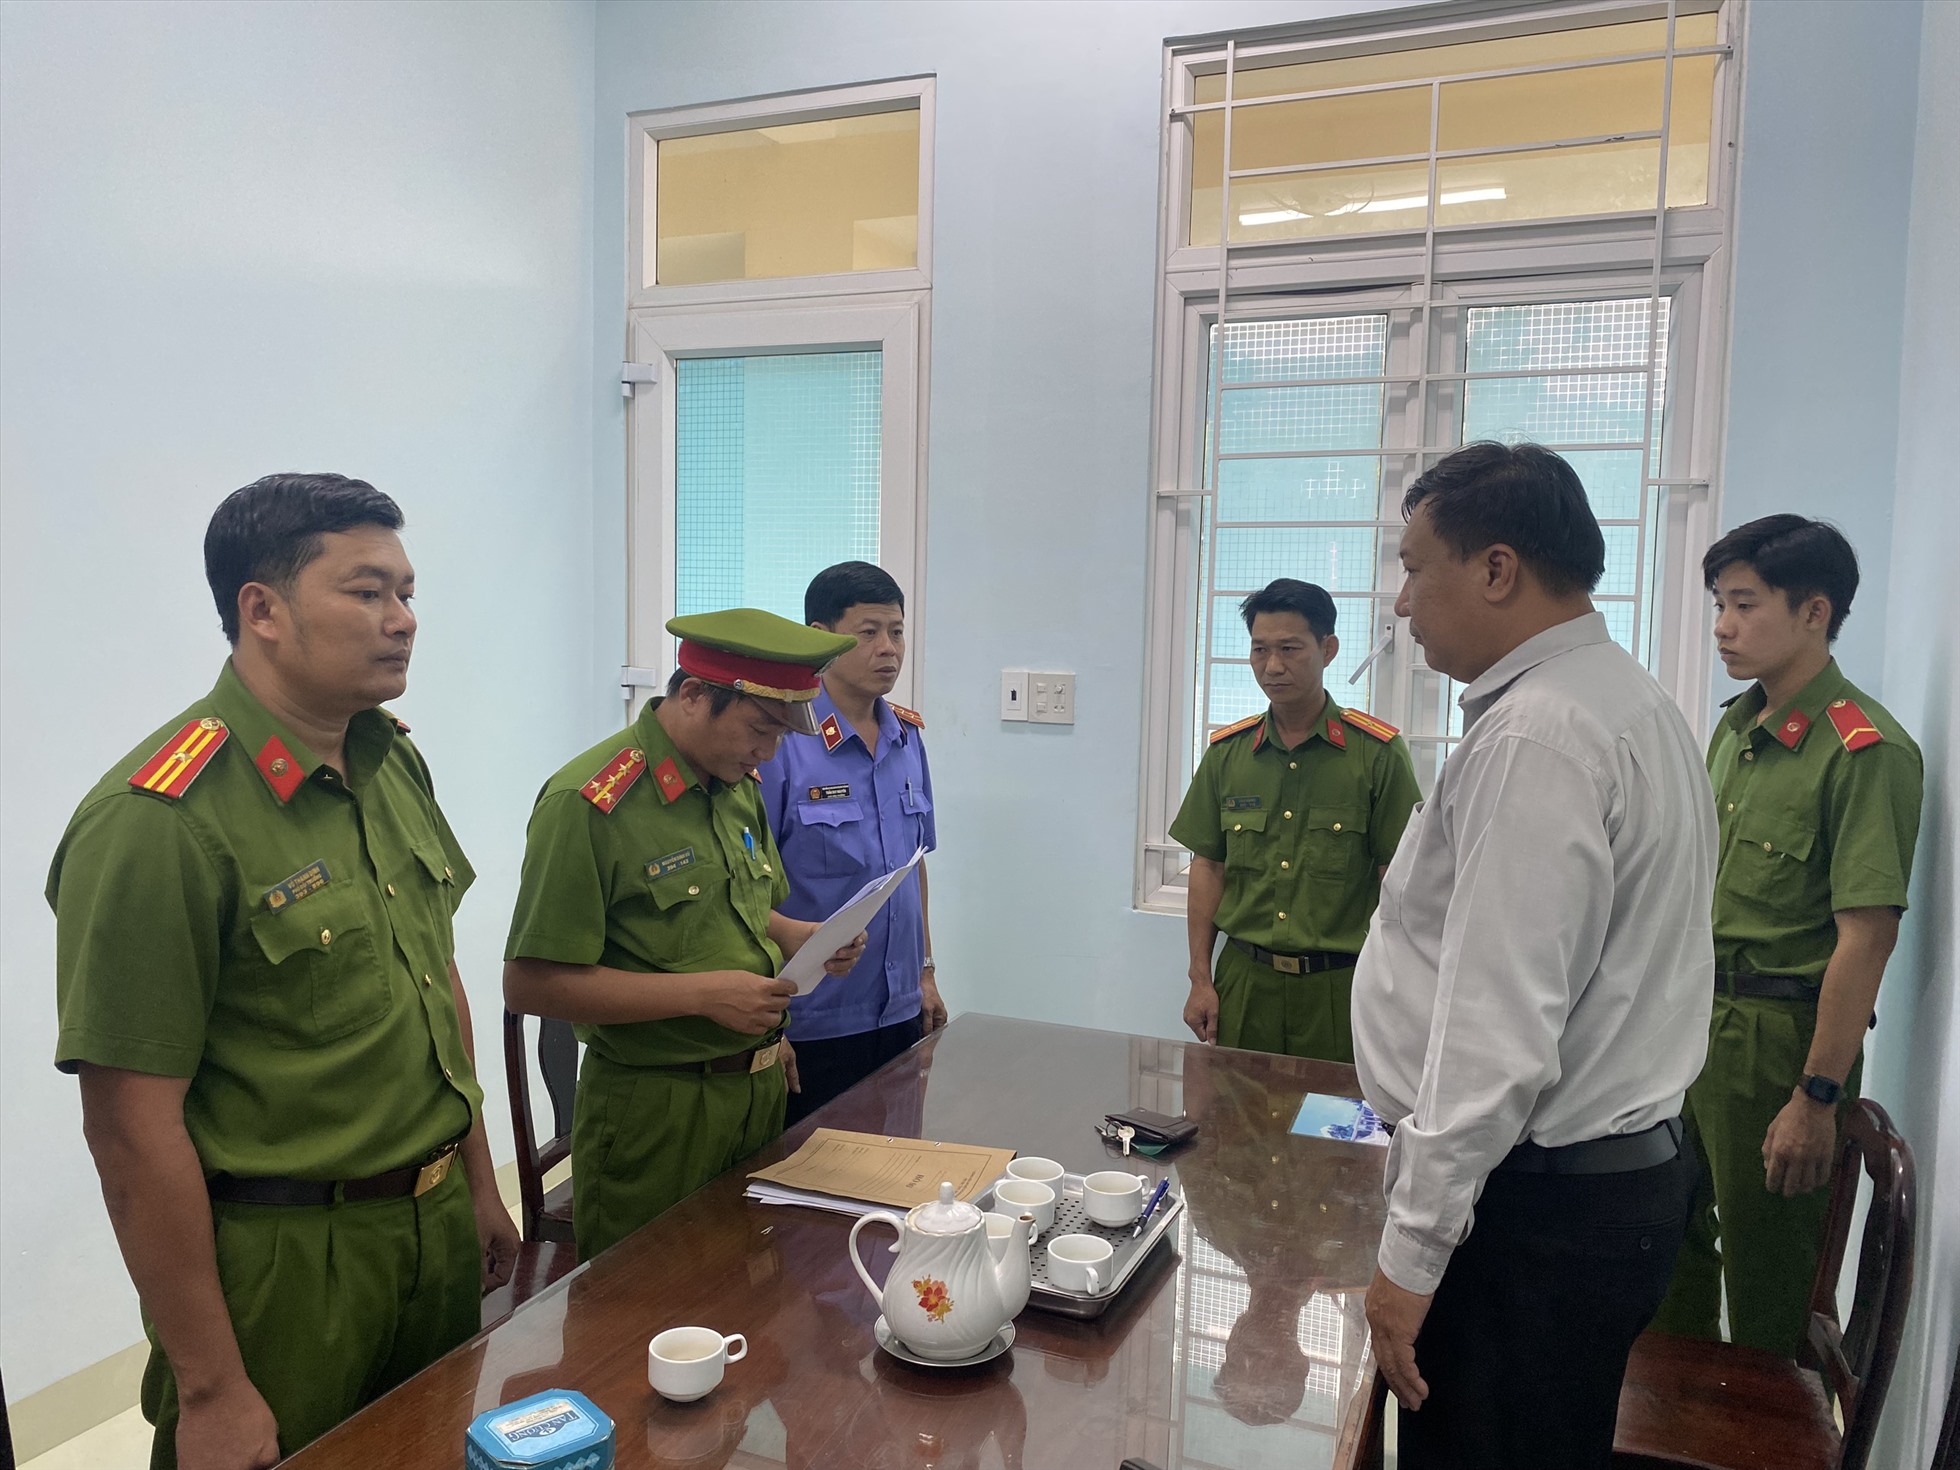 Tống đạt quyết định bắt bị can Nguyễn Anh Phong. Ảnh: Nhân Khoa/VKSND